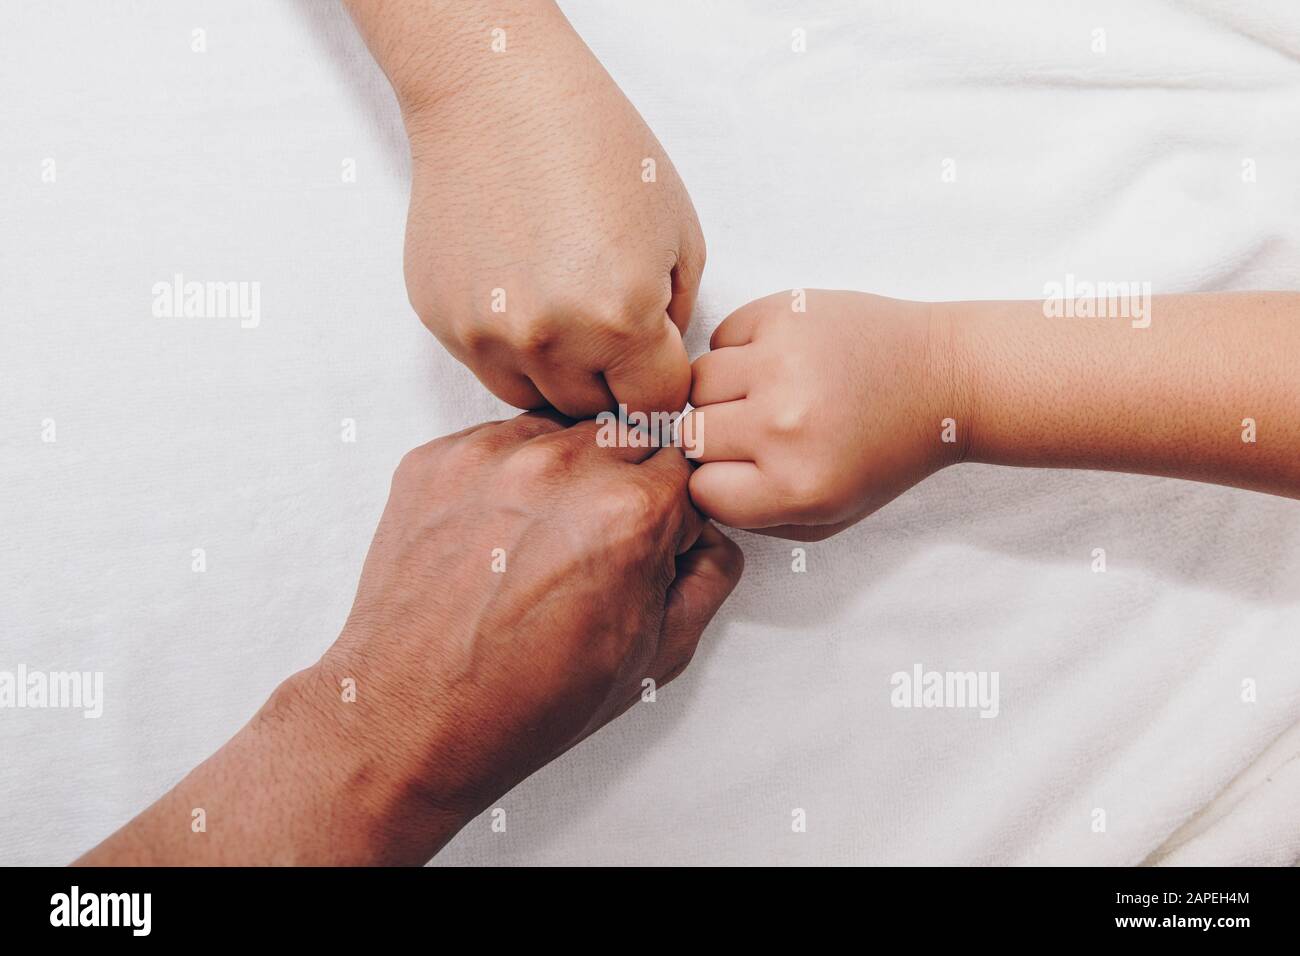 Manos De La Familia Un Bebe Una Hija Una Madre Y Un Padre Concepto De Unidad Apoyo Proteccion Y Felicidad Fotografia De Stock Alamy